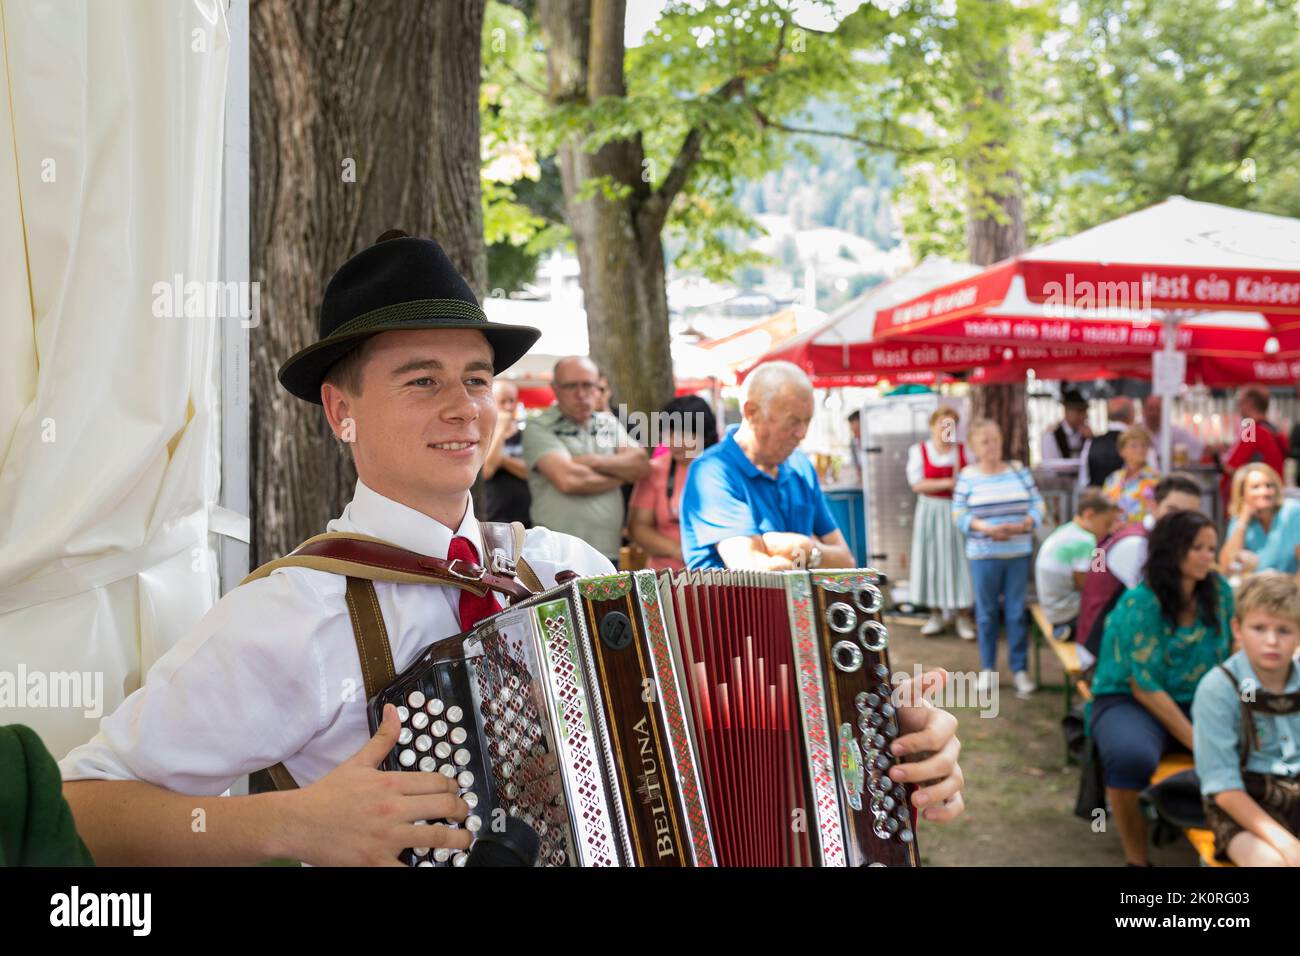 Musicien jouant de la musique folk en costume de Tirol lors d'un festin dans le parc, Zell am See, Autriche Banque D'Images